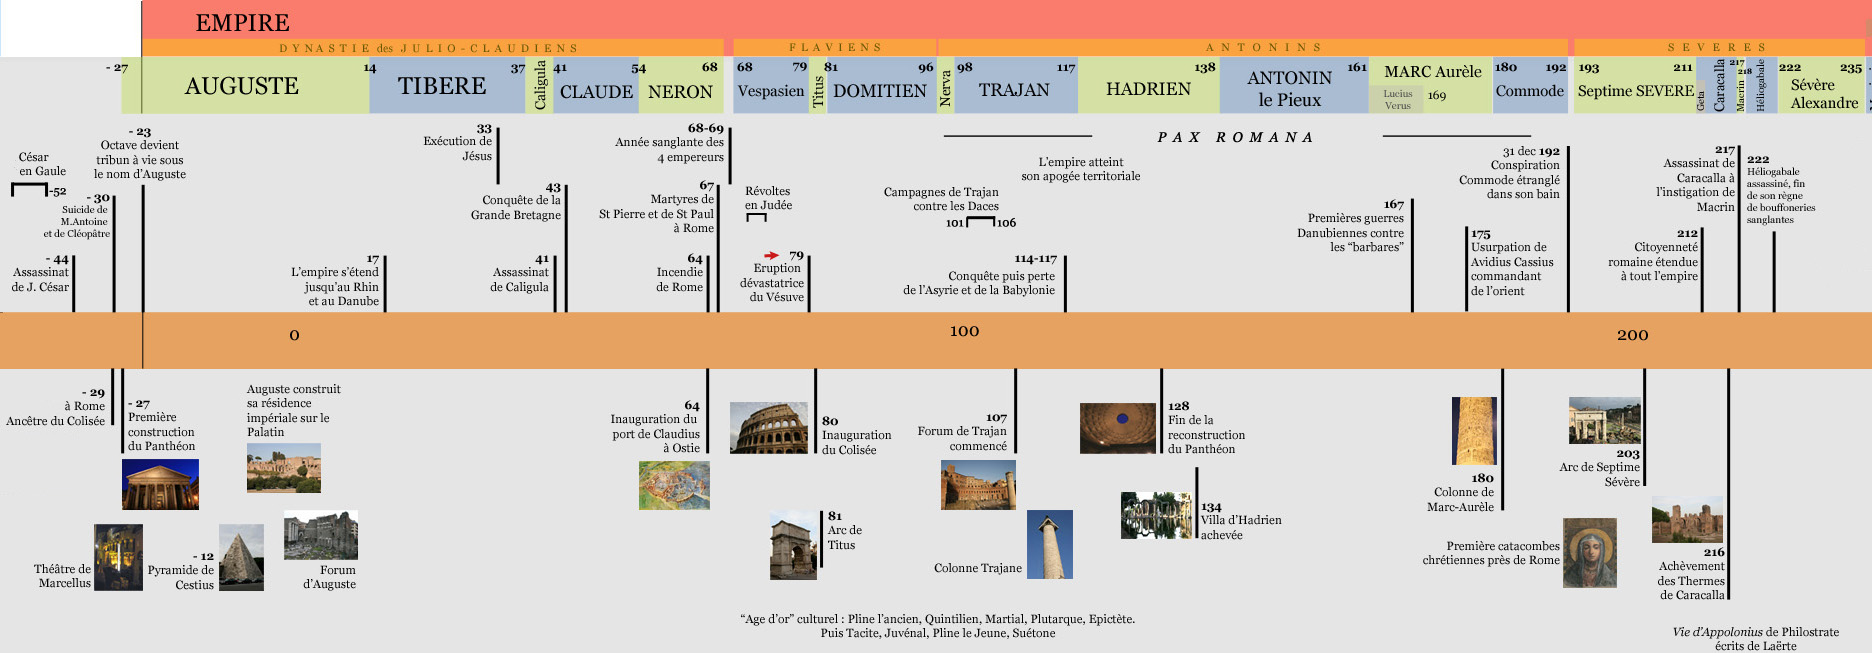 histoire de l'Empire romain